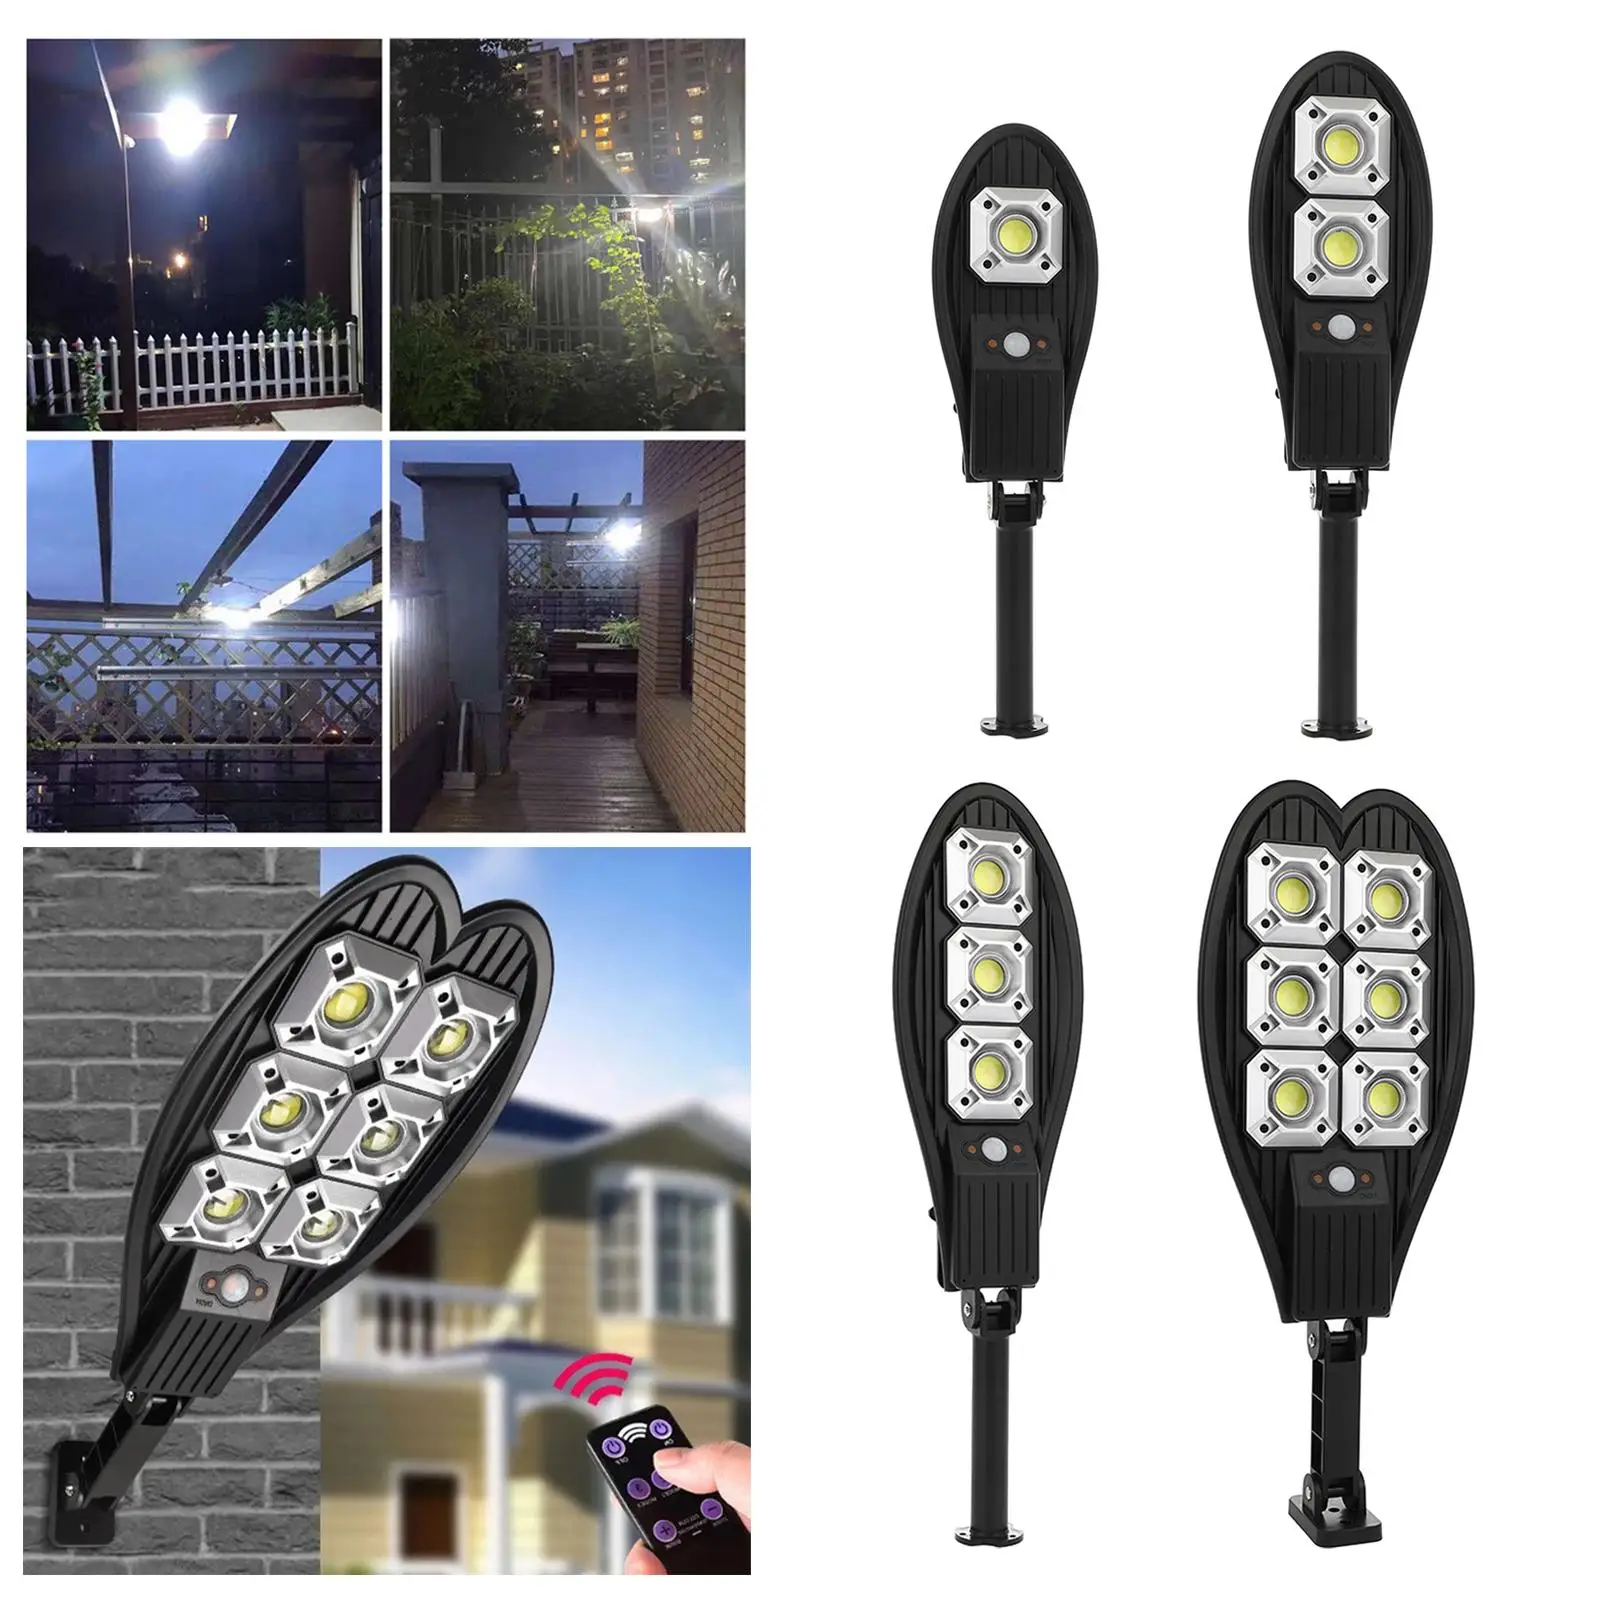 Outdoor Solar Street Light Motion Sensor LED Security Light for Outside Yard